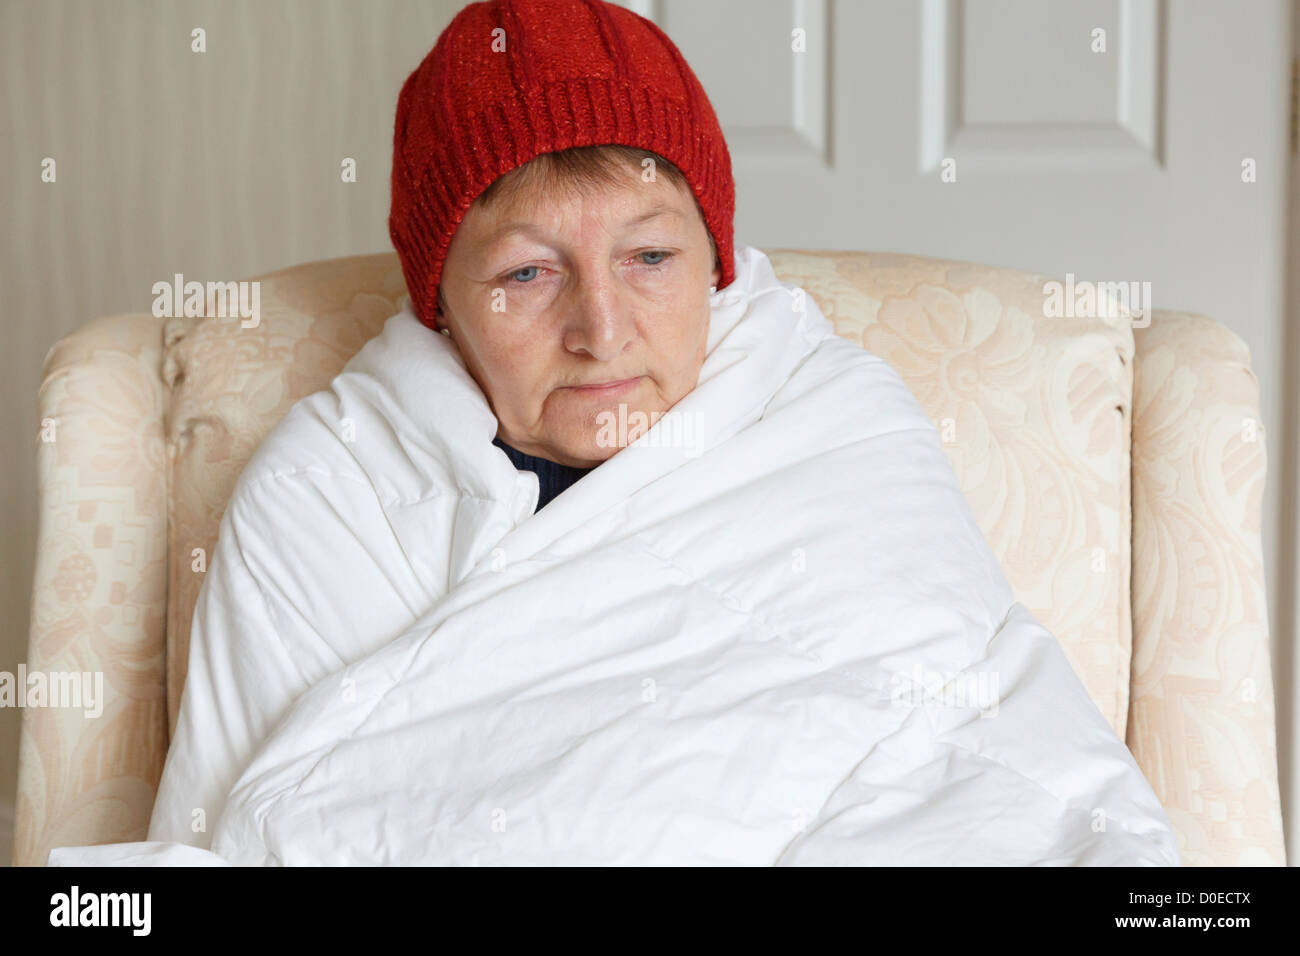 Woman sensation de froid déprimé et seul portant un chapeau et enveloppé dans une couette essayant de garder au chaud et confortable à la maison en hiver. Angleterre Royaume-uni Grande-Bretagne Banque D'Images